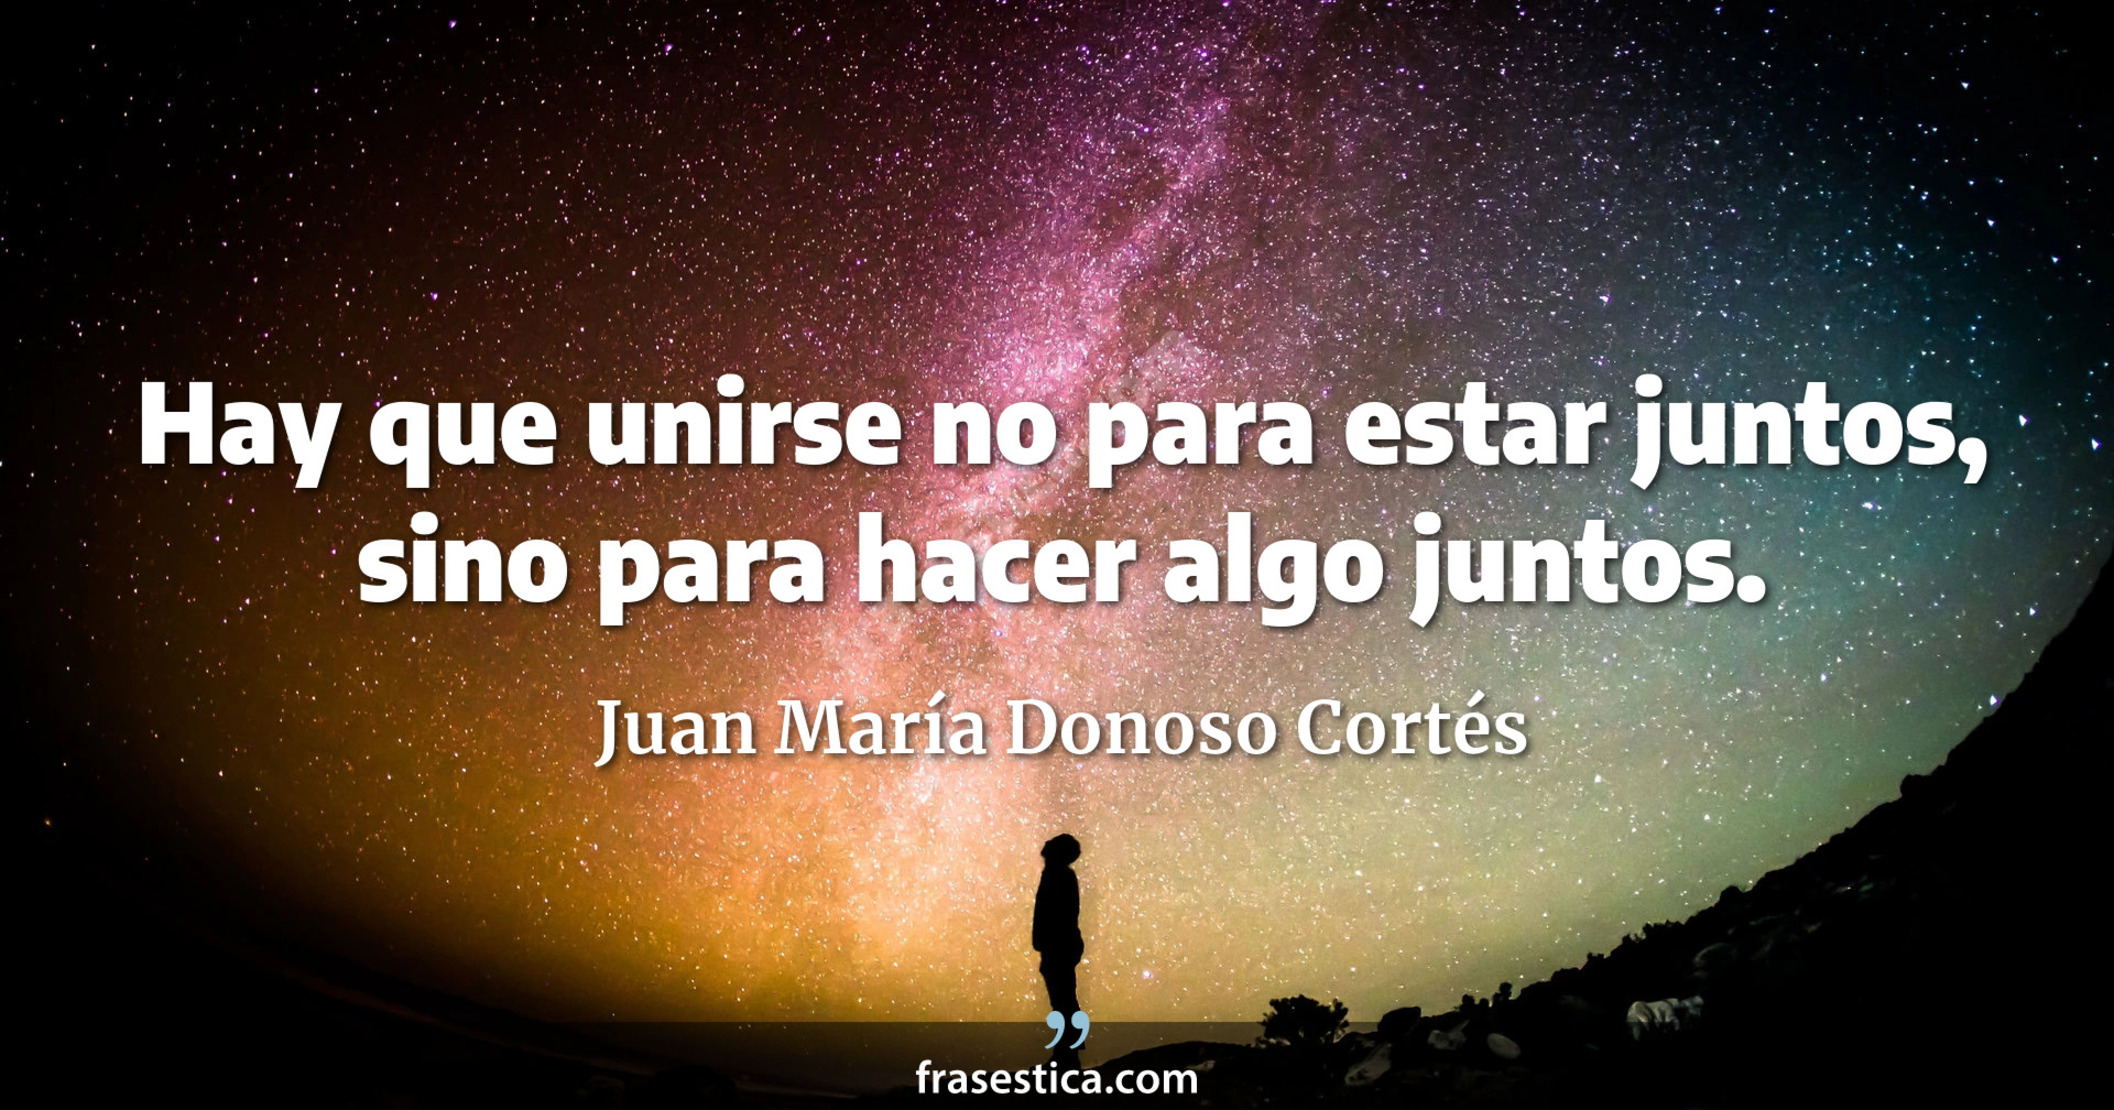 Hay que unirse no para estar juntos, sino para hacer algo juntos. - Juan María Donoso Cortés